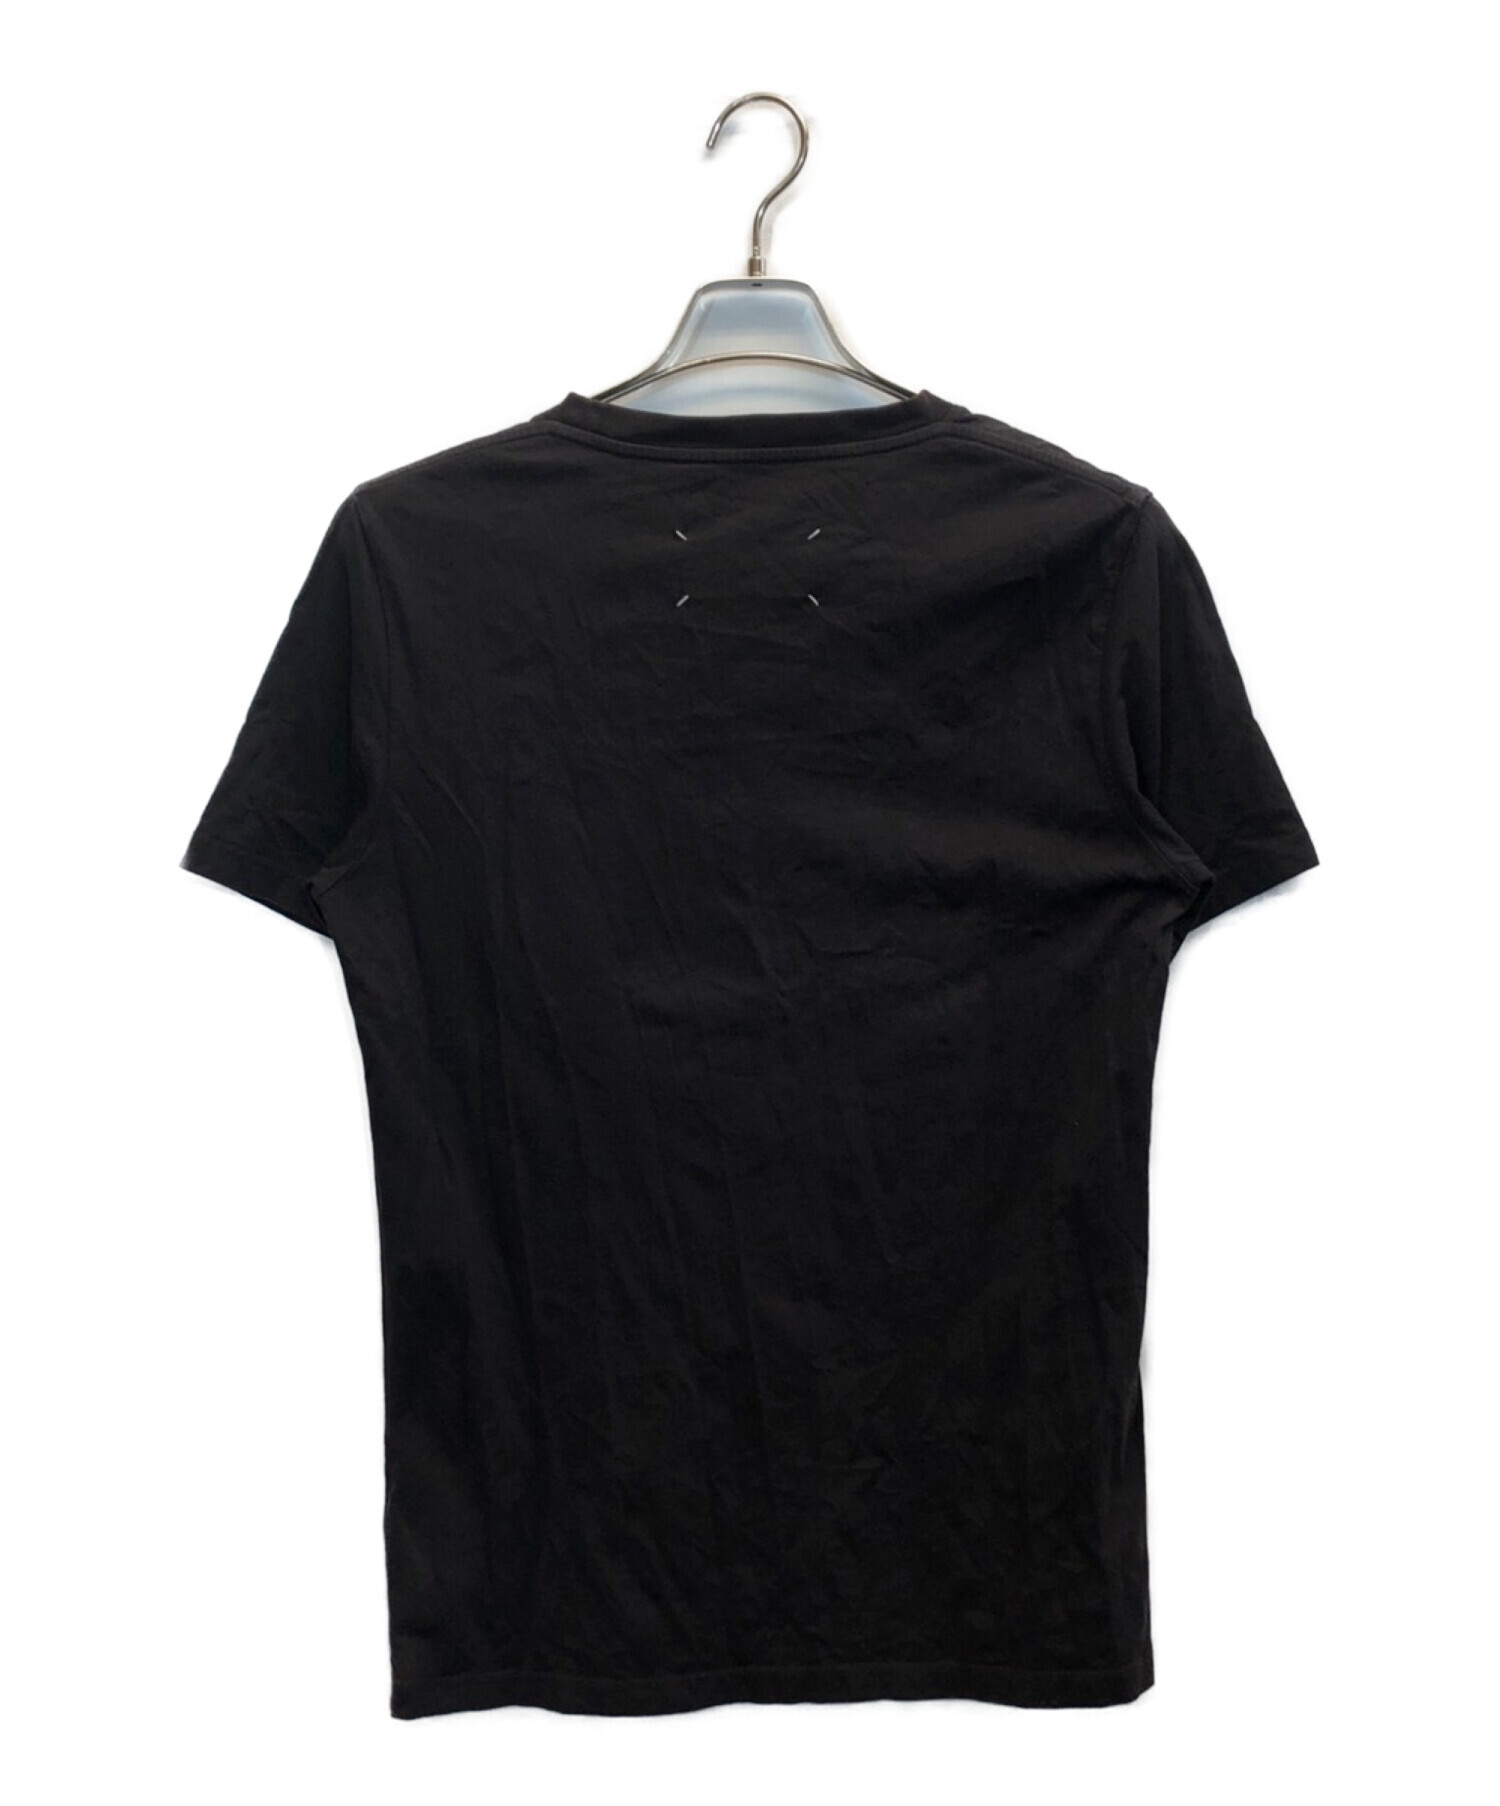 Maison Margiela (メゾンマルジェラ) ステレオタイプパッチTシャツ ブラック サイズ:46